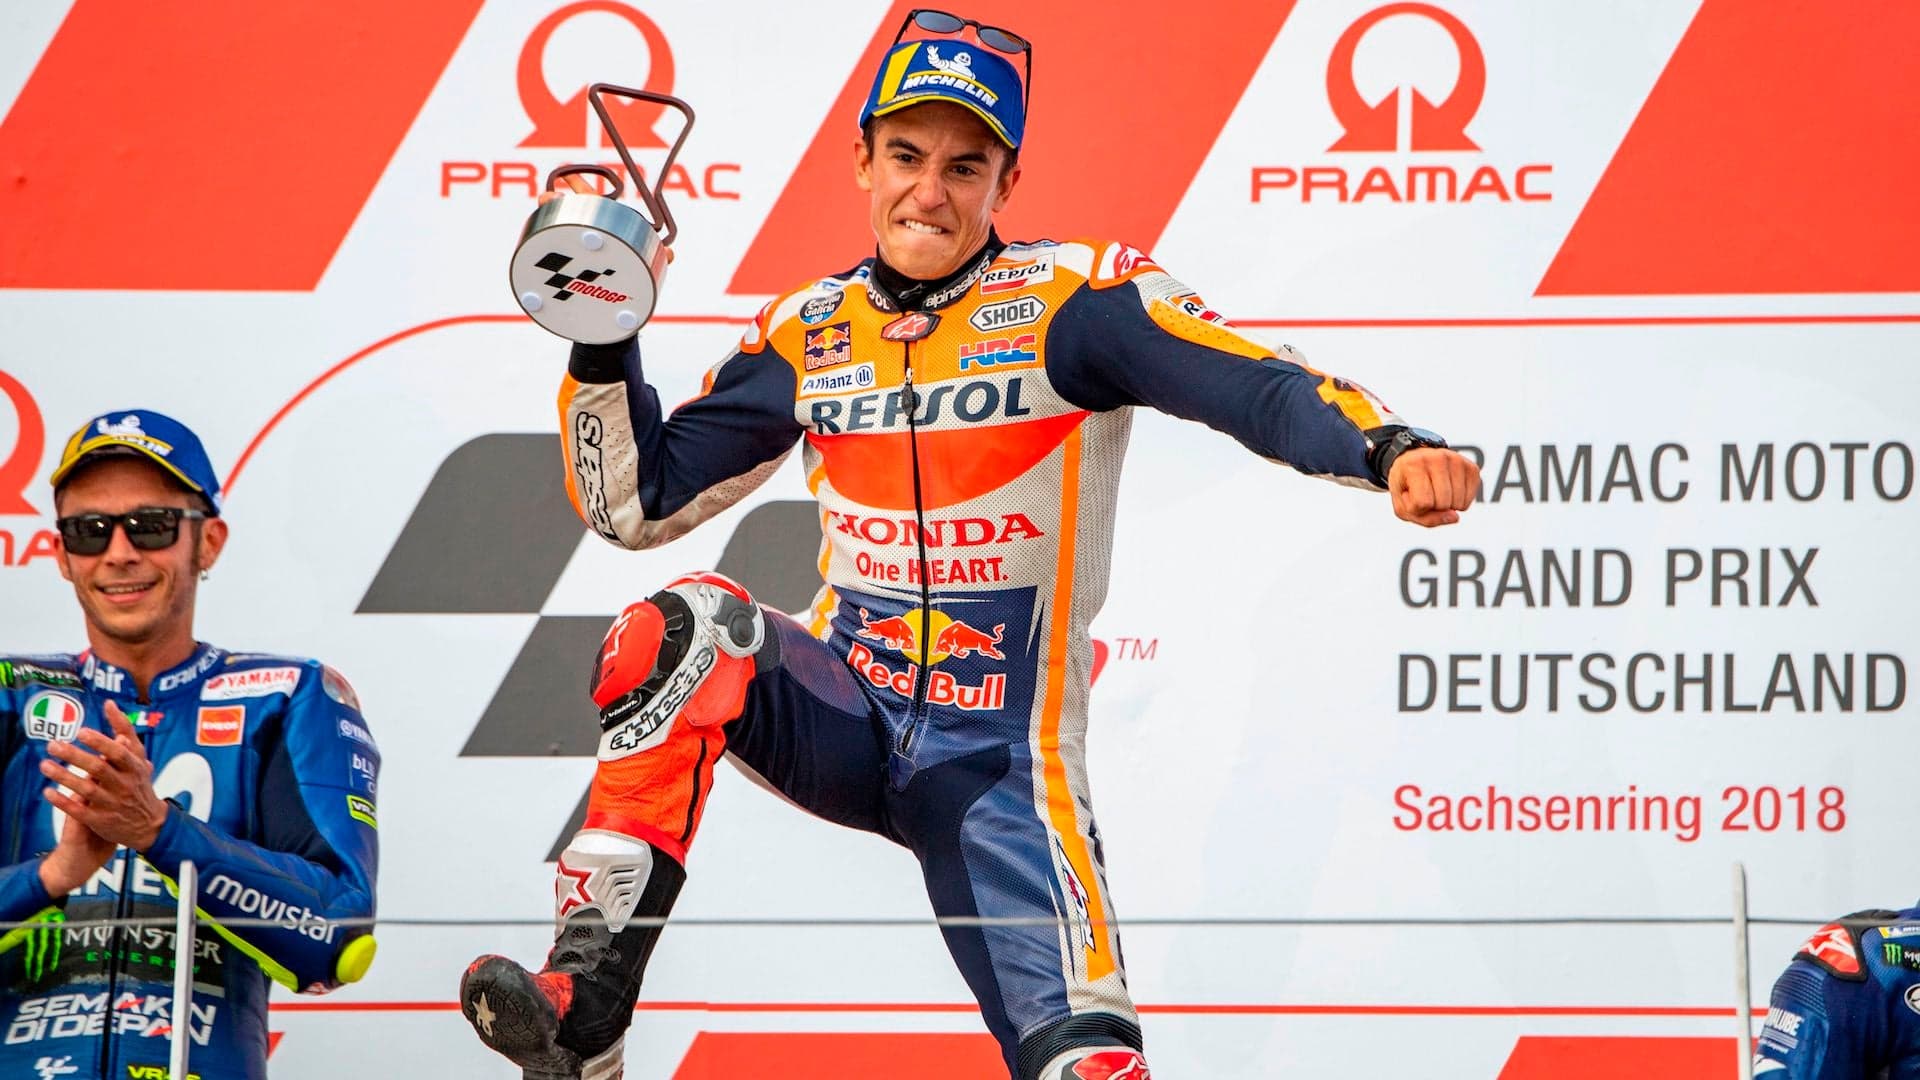 MotoGP Deutschland: Dominant Marquez Wins Over Yamaha’s Rossi and Vinales